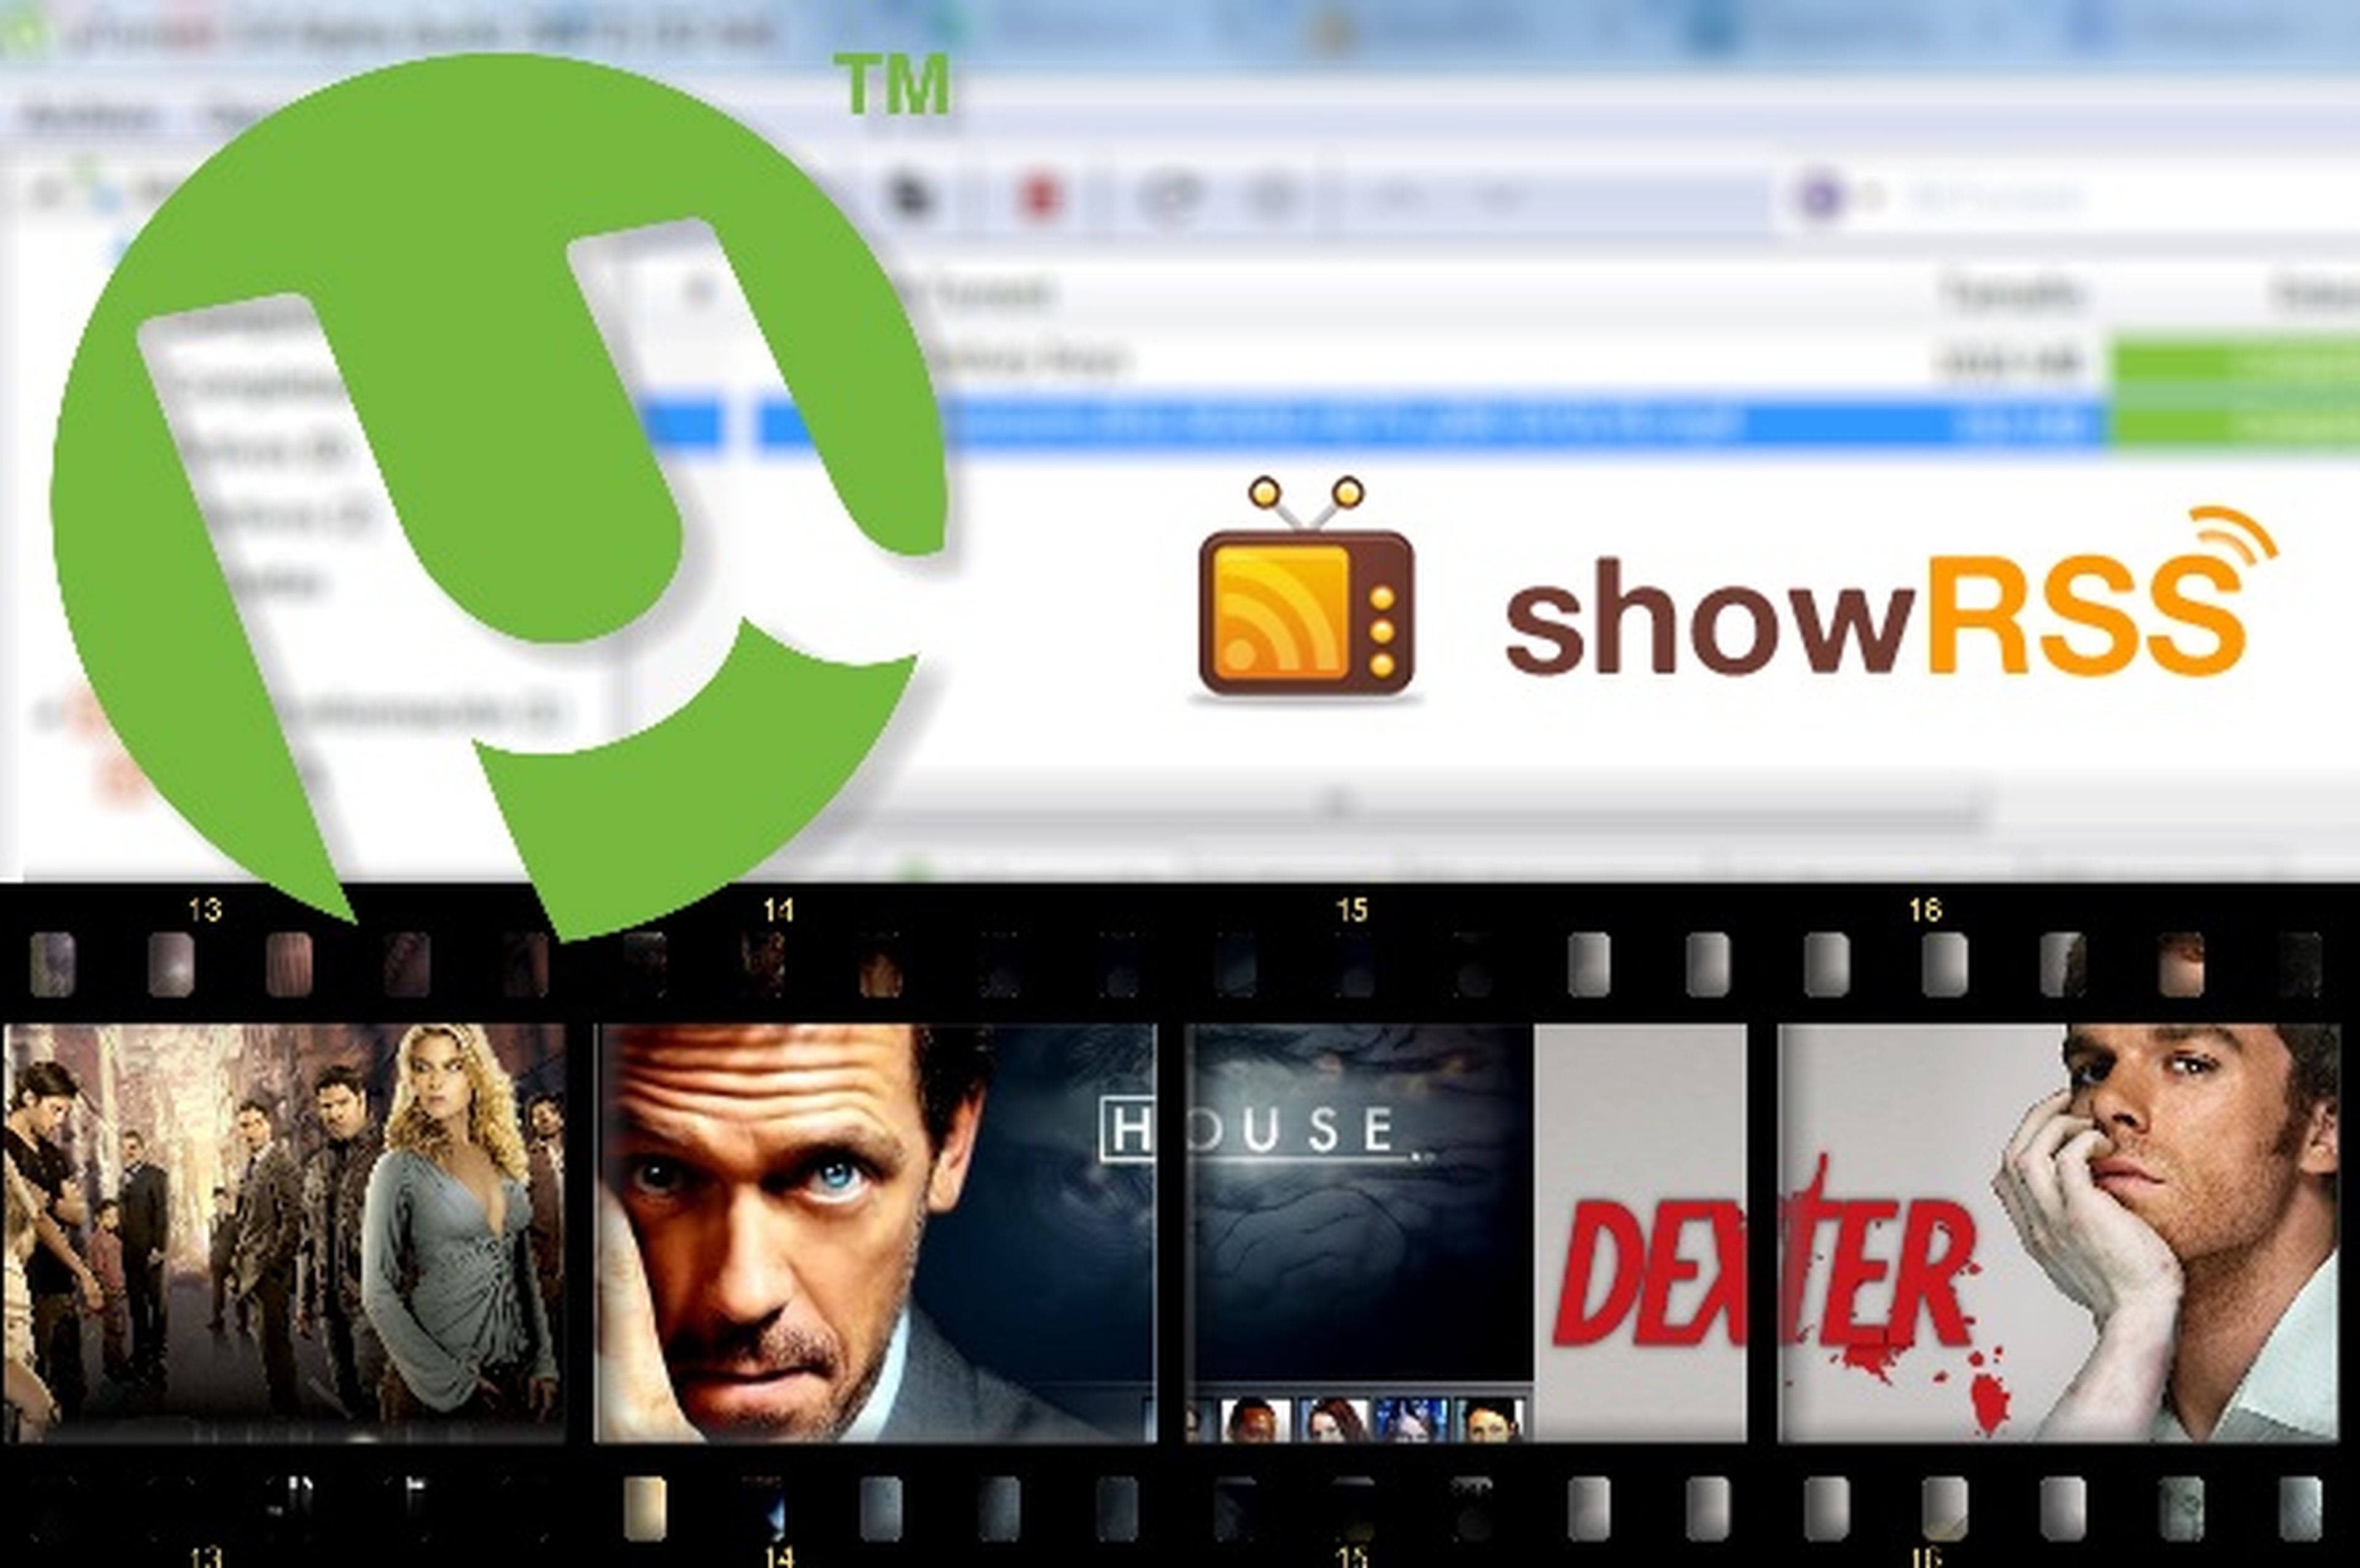 Descarga series de TV automáticamente con uTorrent y showRSS